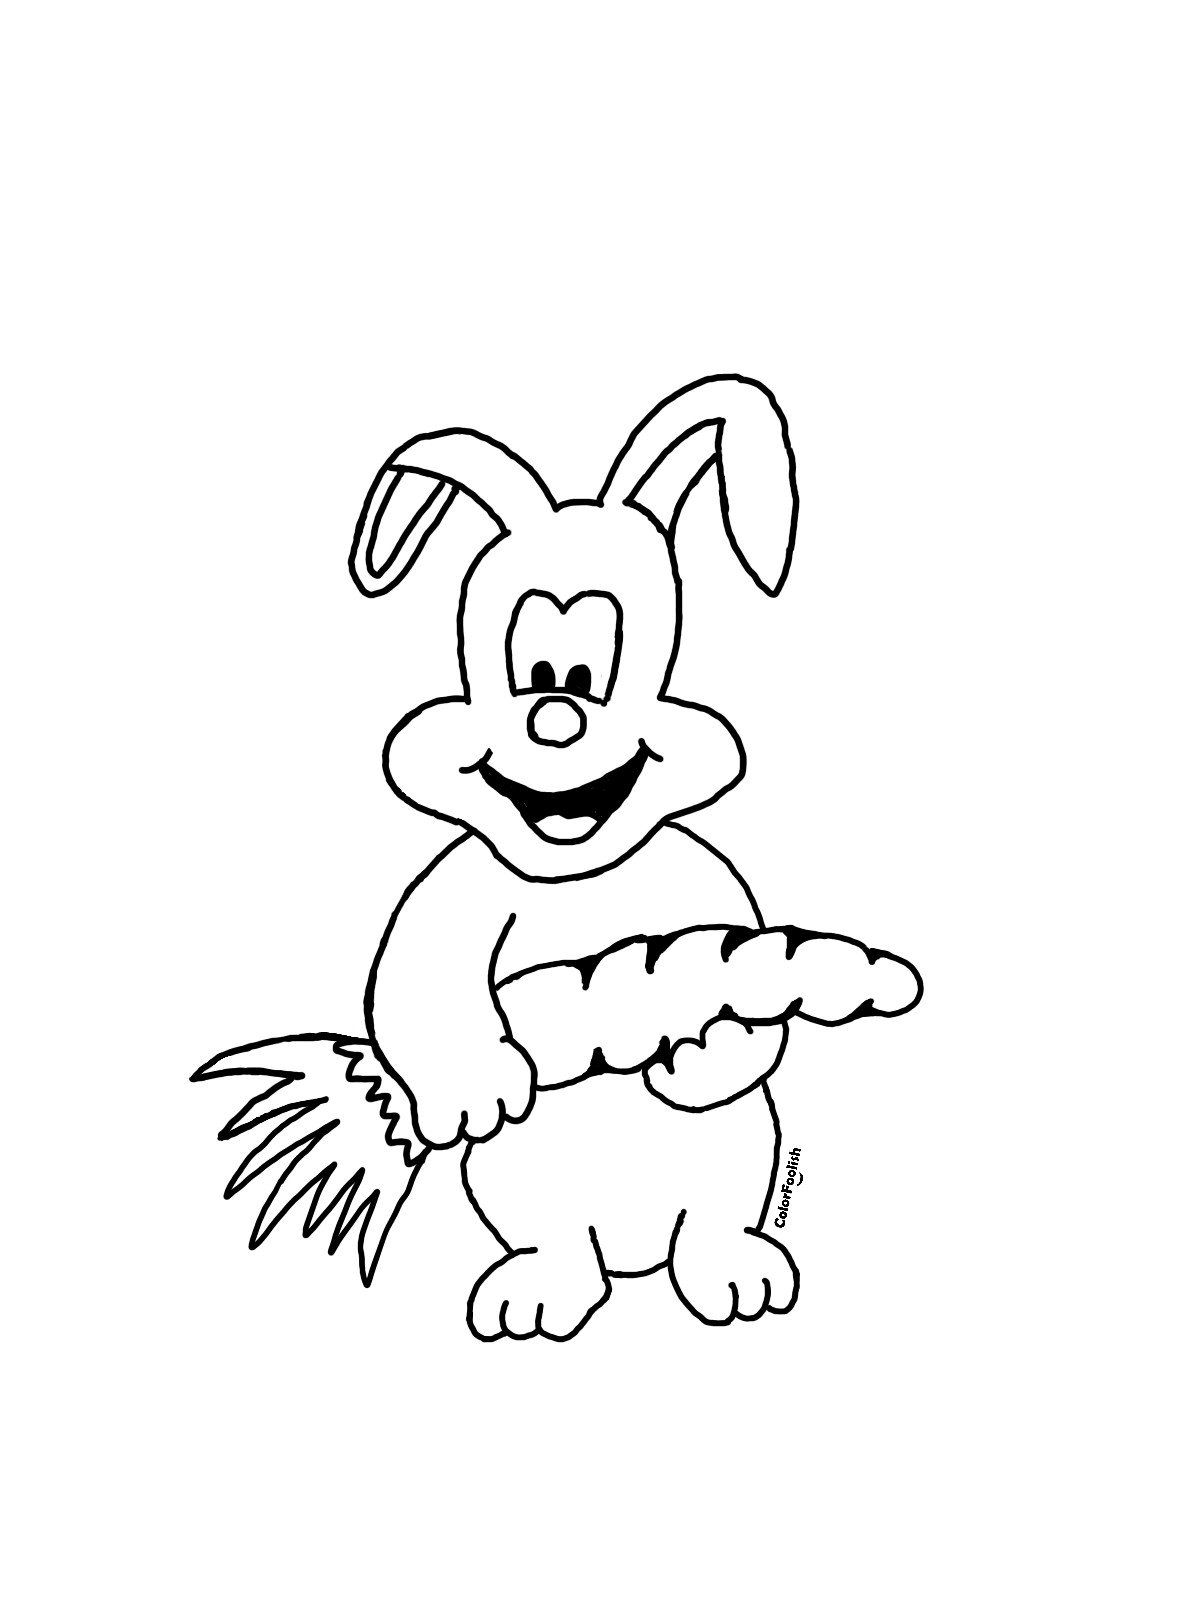 Dibujo para colorear de un conejo con una zanahoria